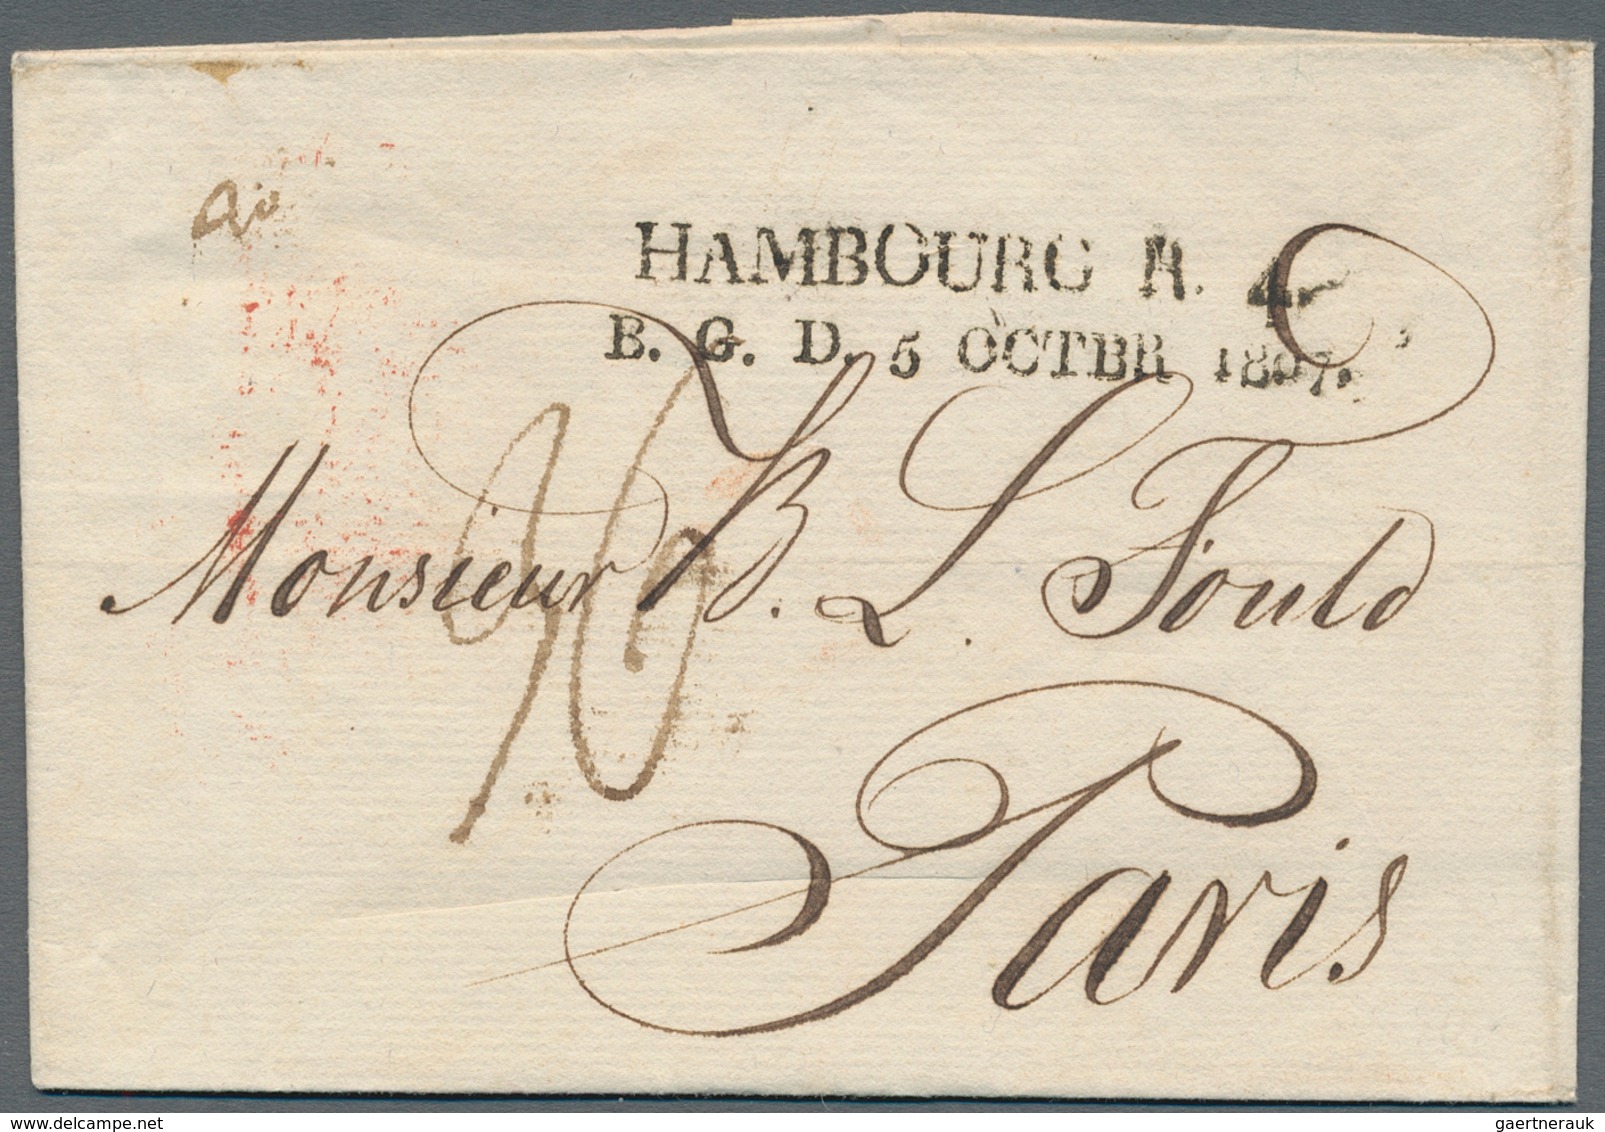 Hamburg - Französisches Postamt: "HAMBOURG R. 4. B. G. D. + Daten Juni bis November 1807" französisc